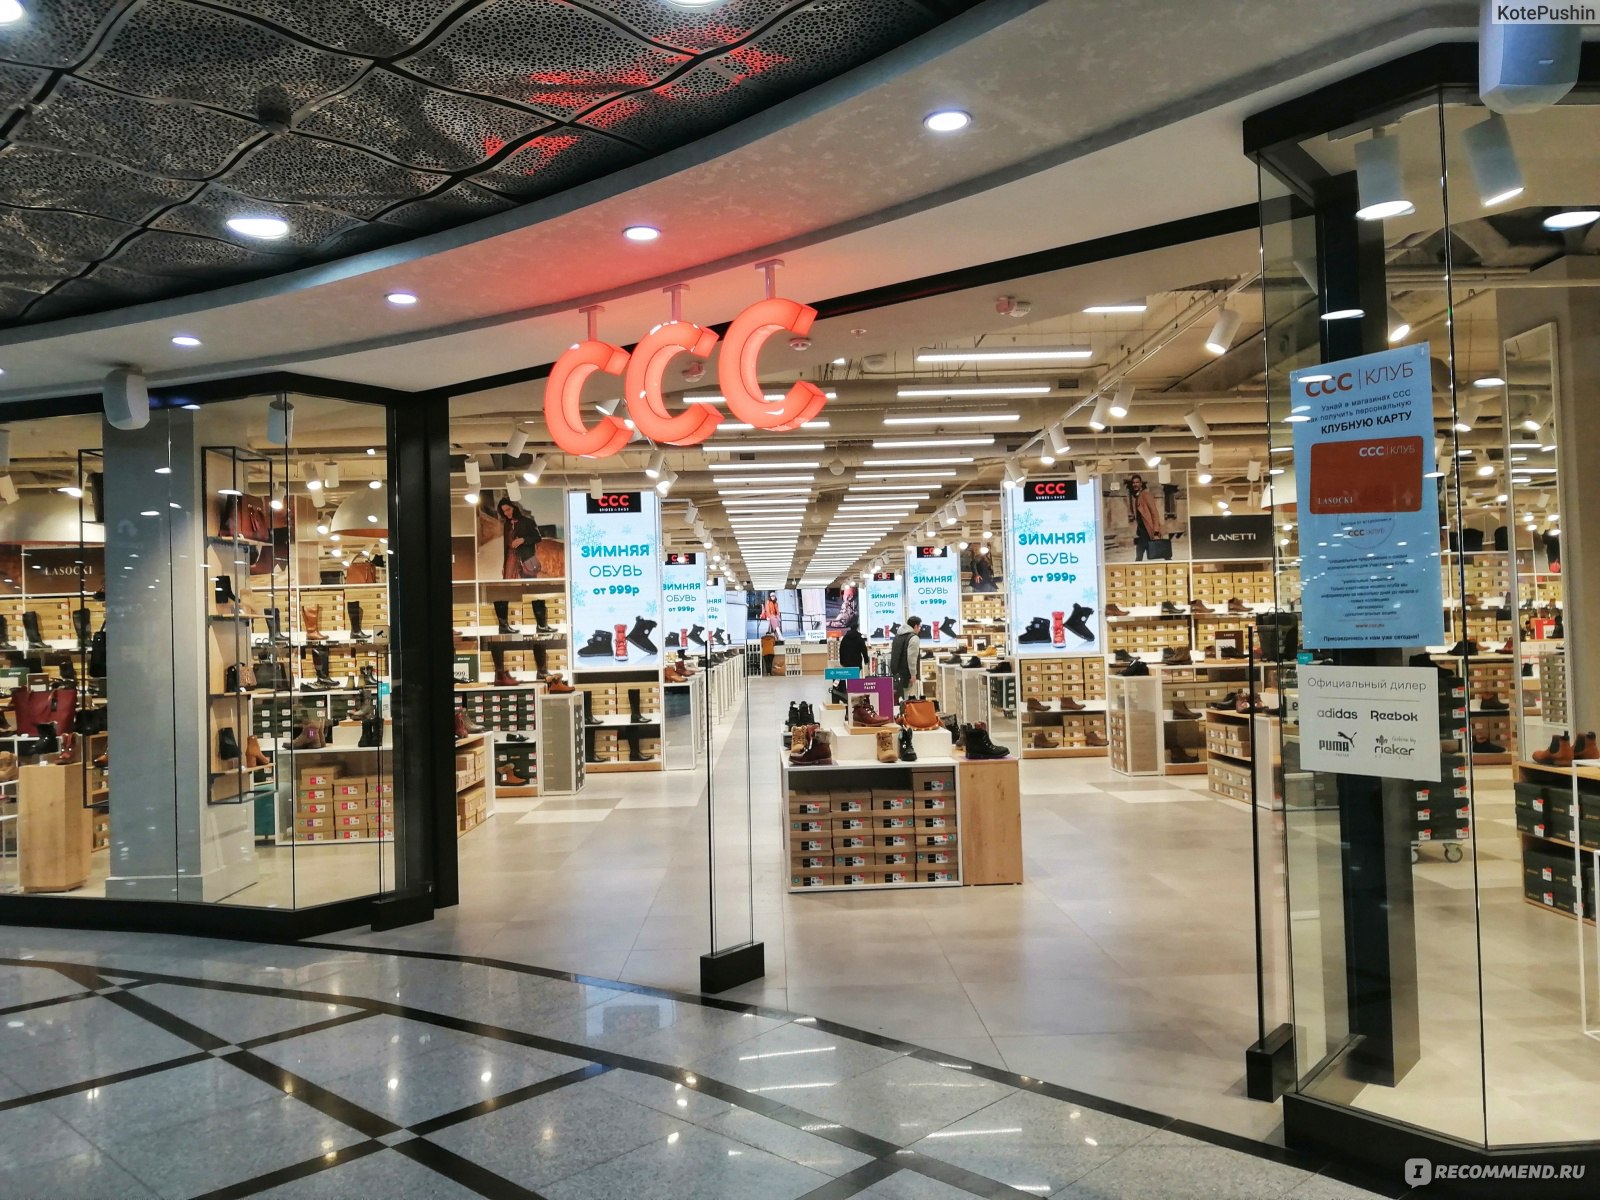 Ссс Обувь Магазины В Москве